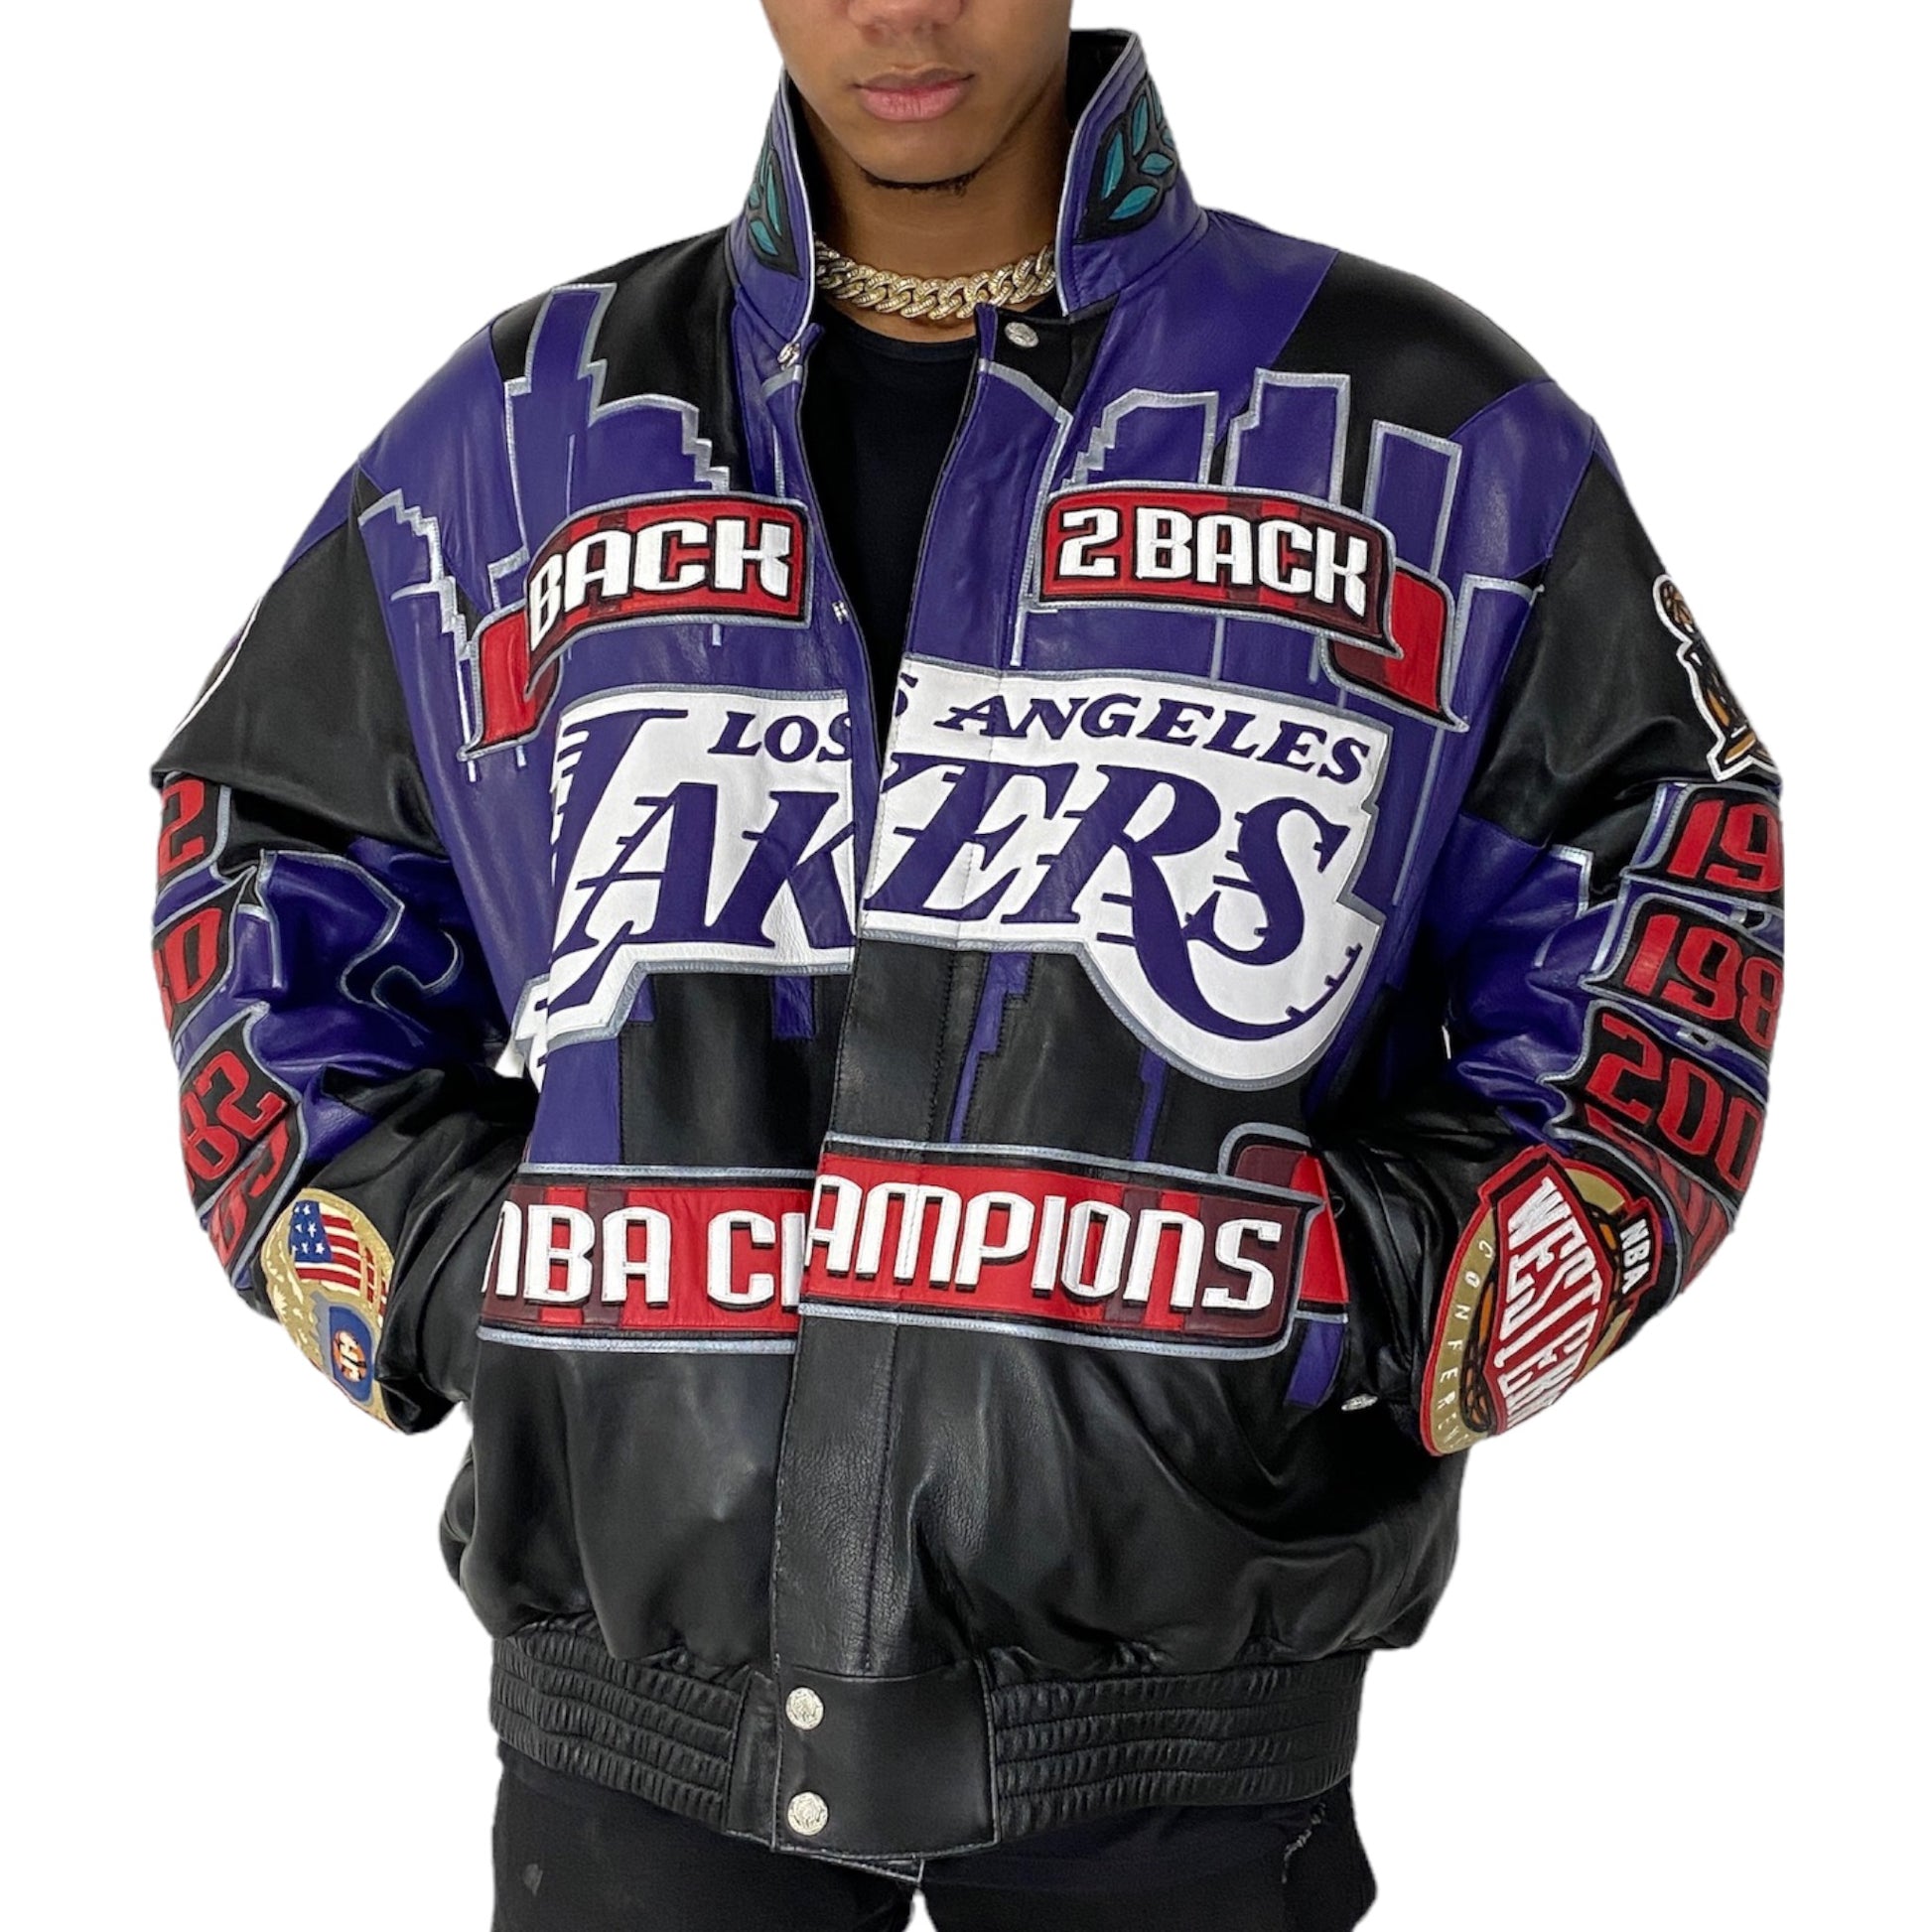 NBA LA Laker Bomber Jacket